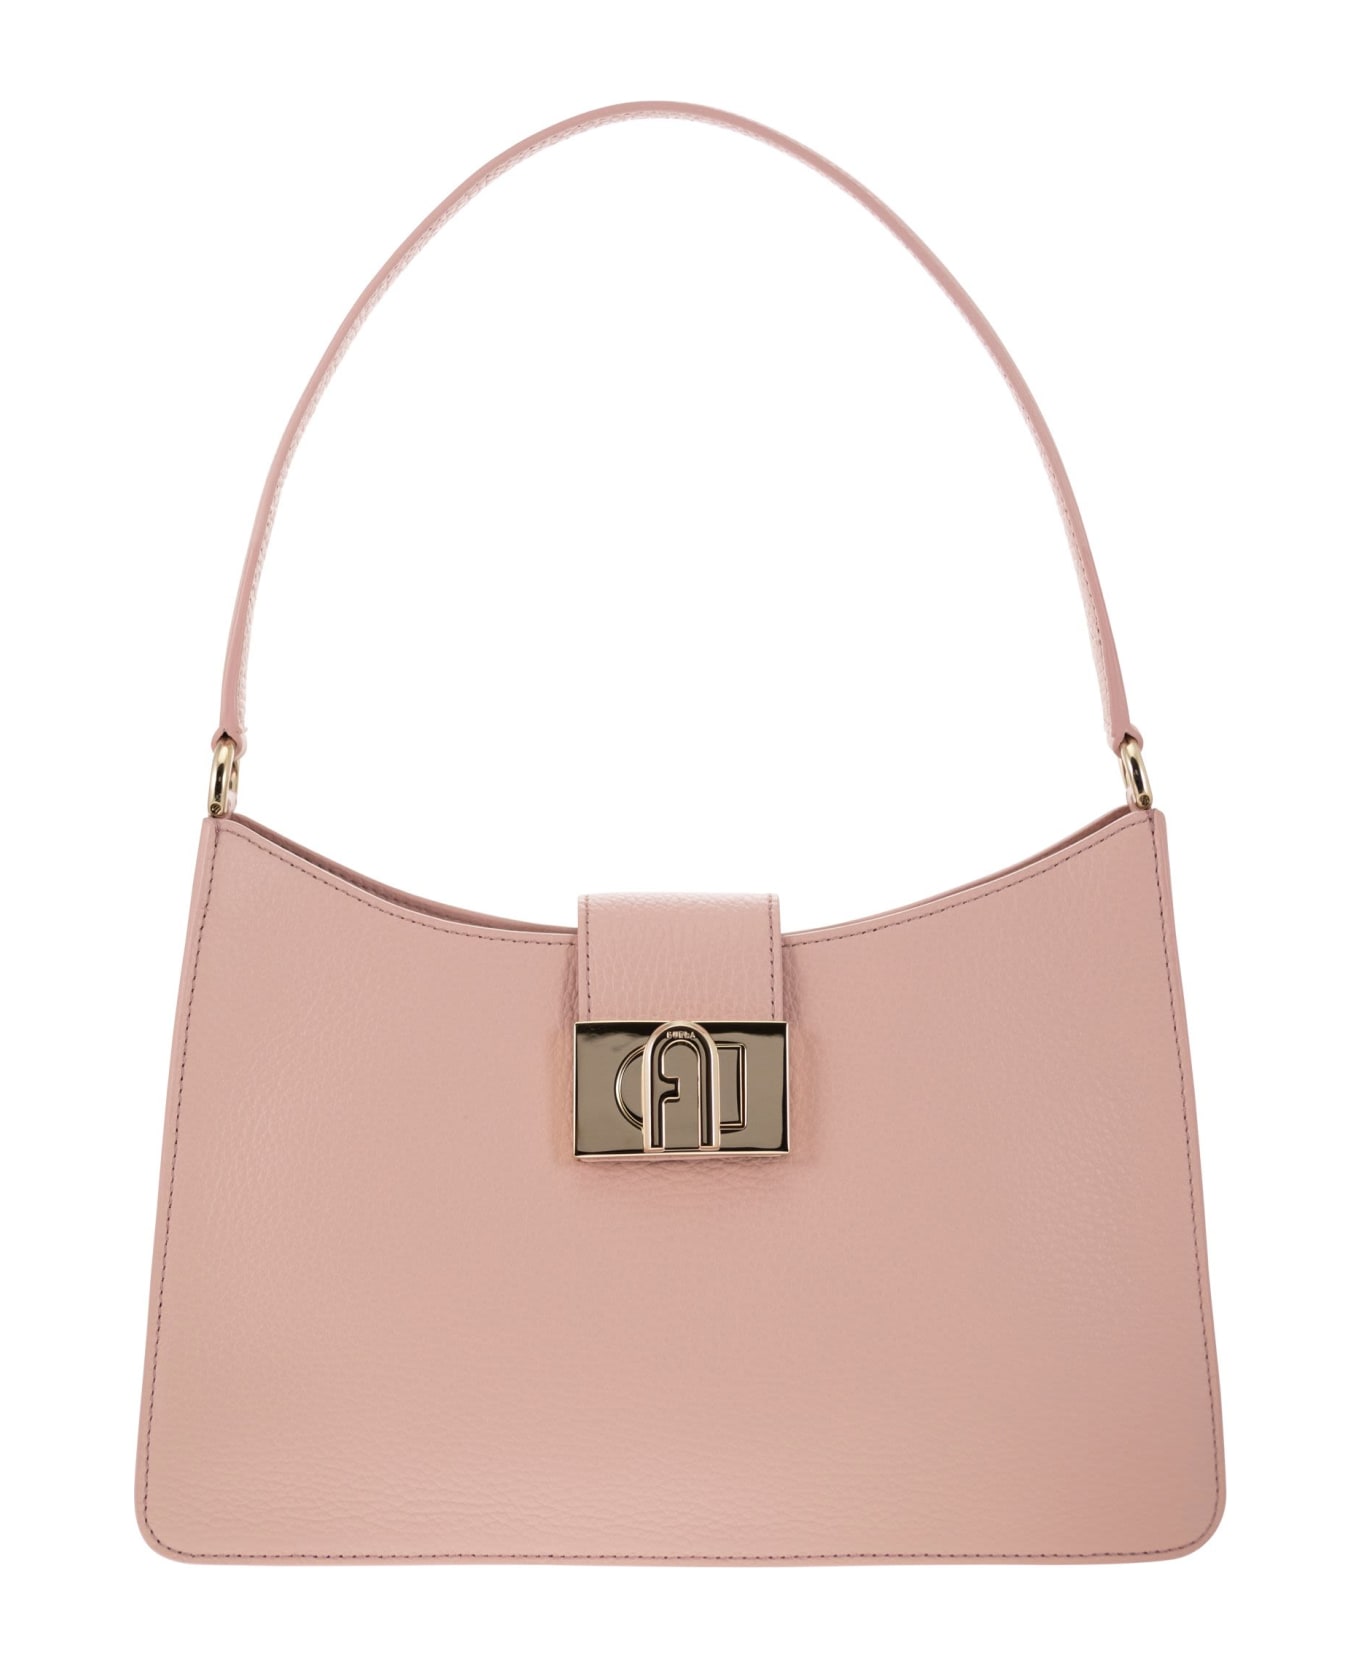 Furla 1927 M - Shoulder Bag - Pink